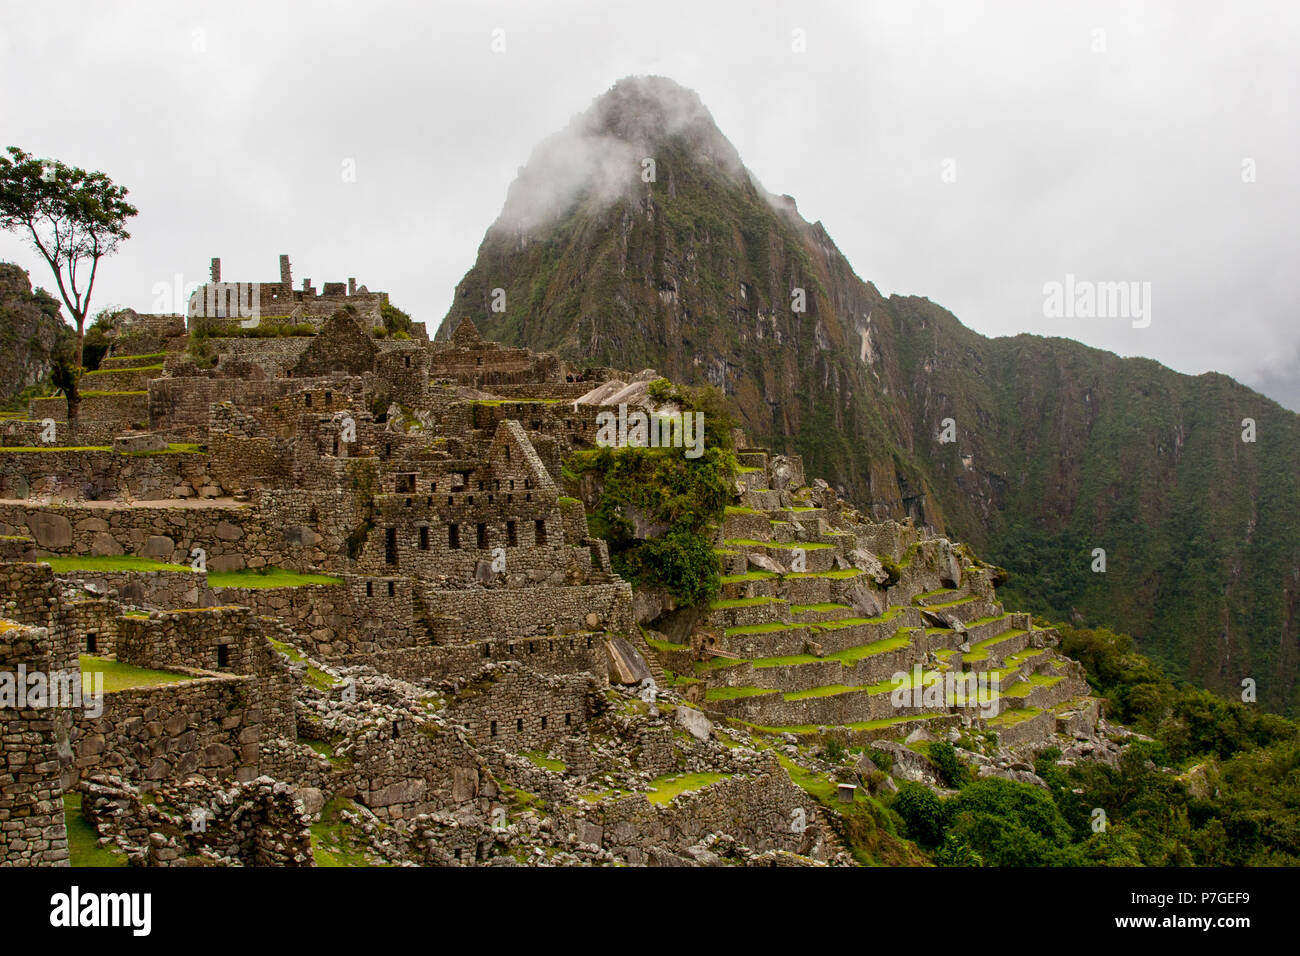 Bellissime foto di sfondo di Machu Picchu rovine e terrazze di agricoltura di montagna con la nebbia in background. N. persone. Foto Stock